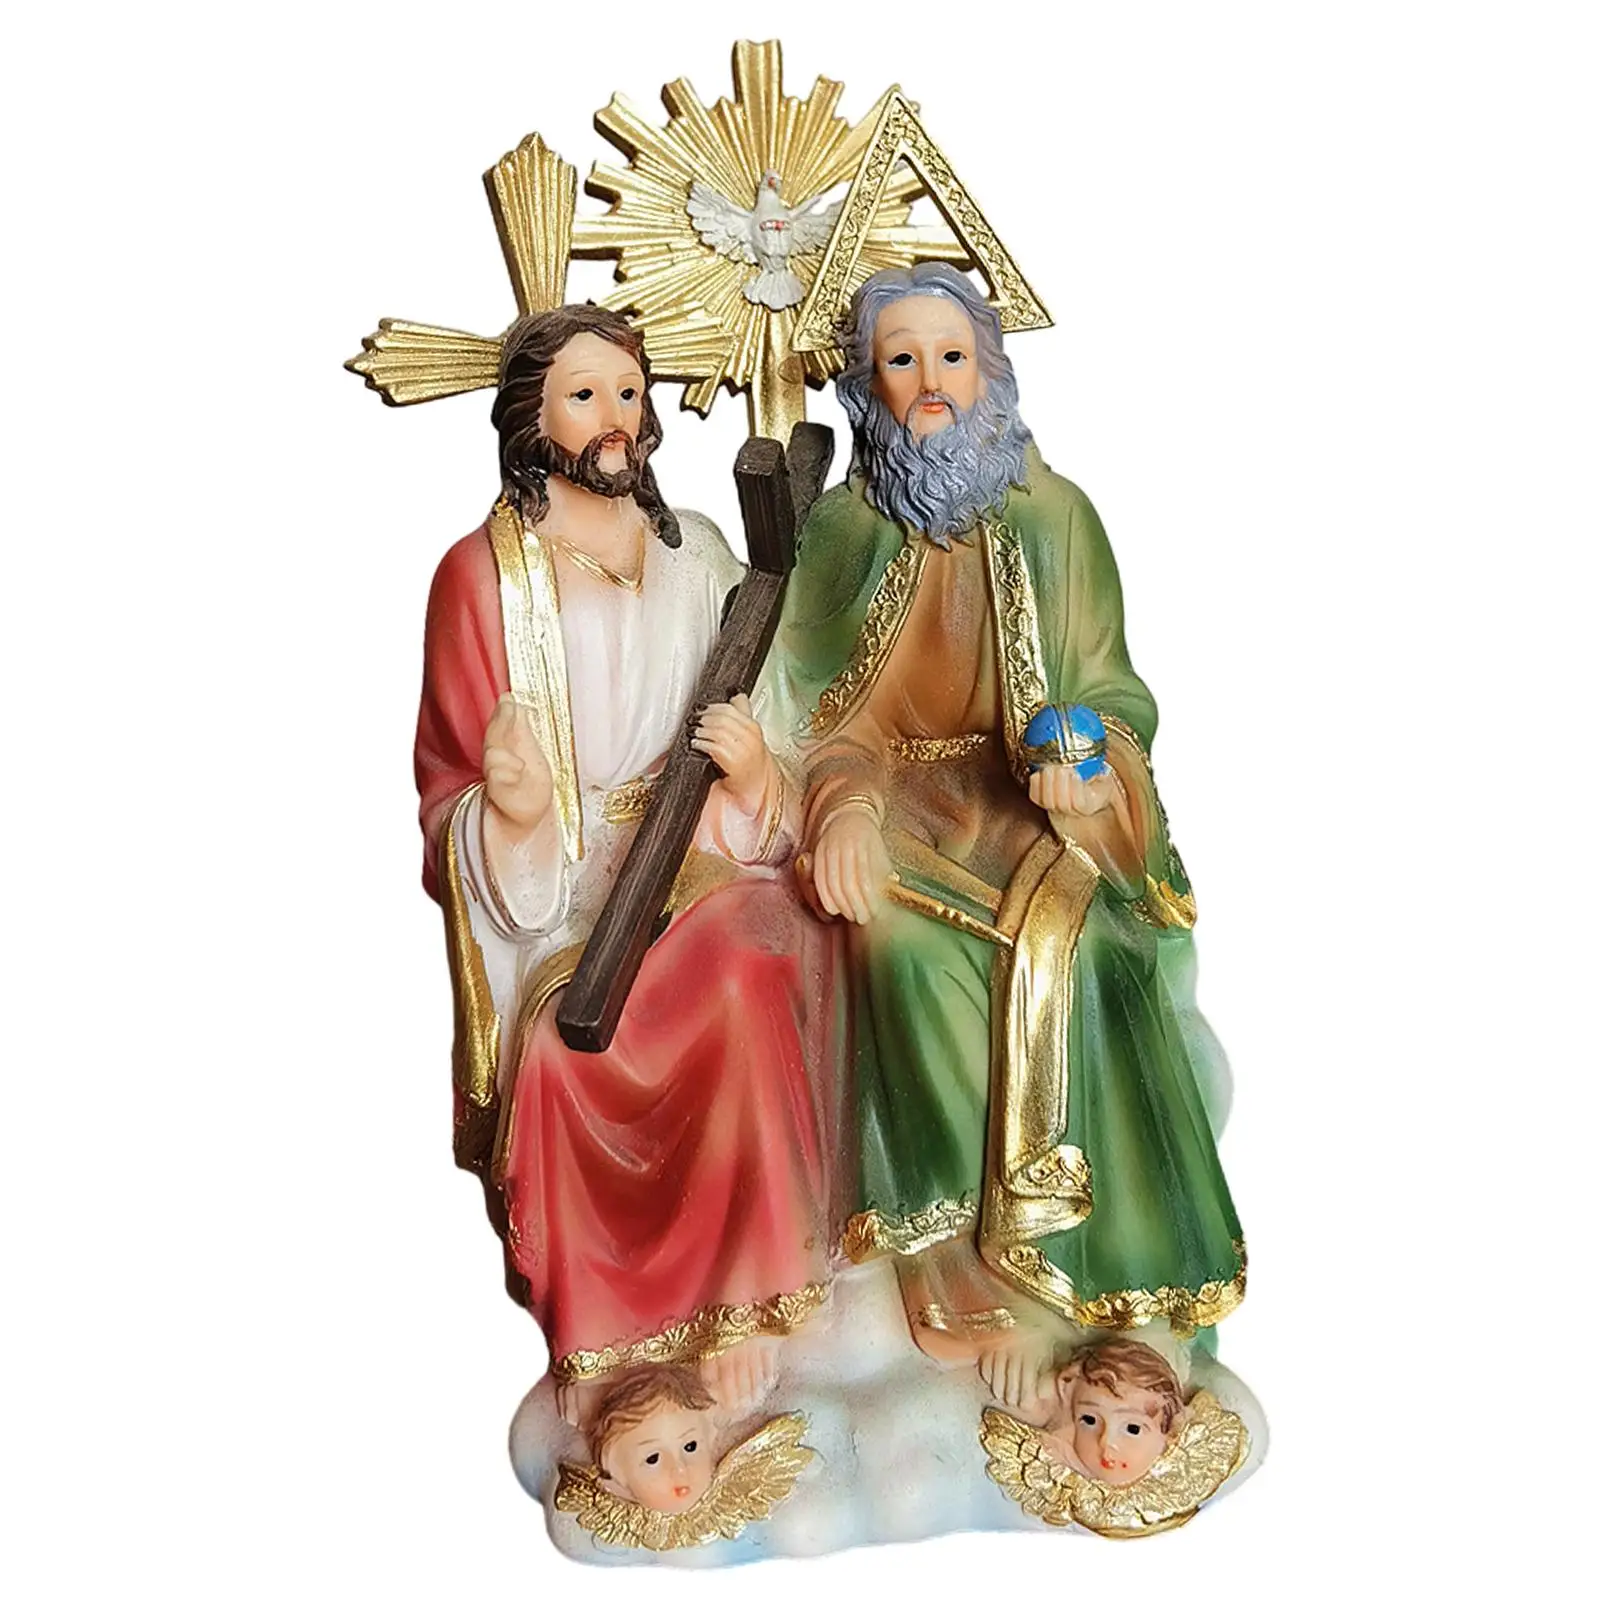 

Религиозная фигура статуя дисплей ремесла Декор статуя религиозный подарок Коллекционная религиозная скульптура для автомобиля стол домашний стол Полка